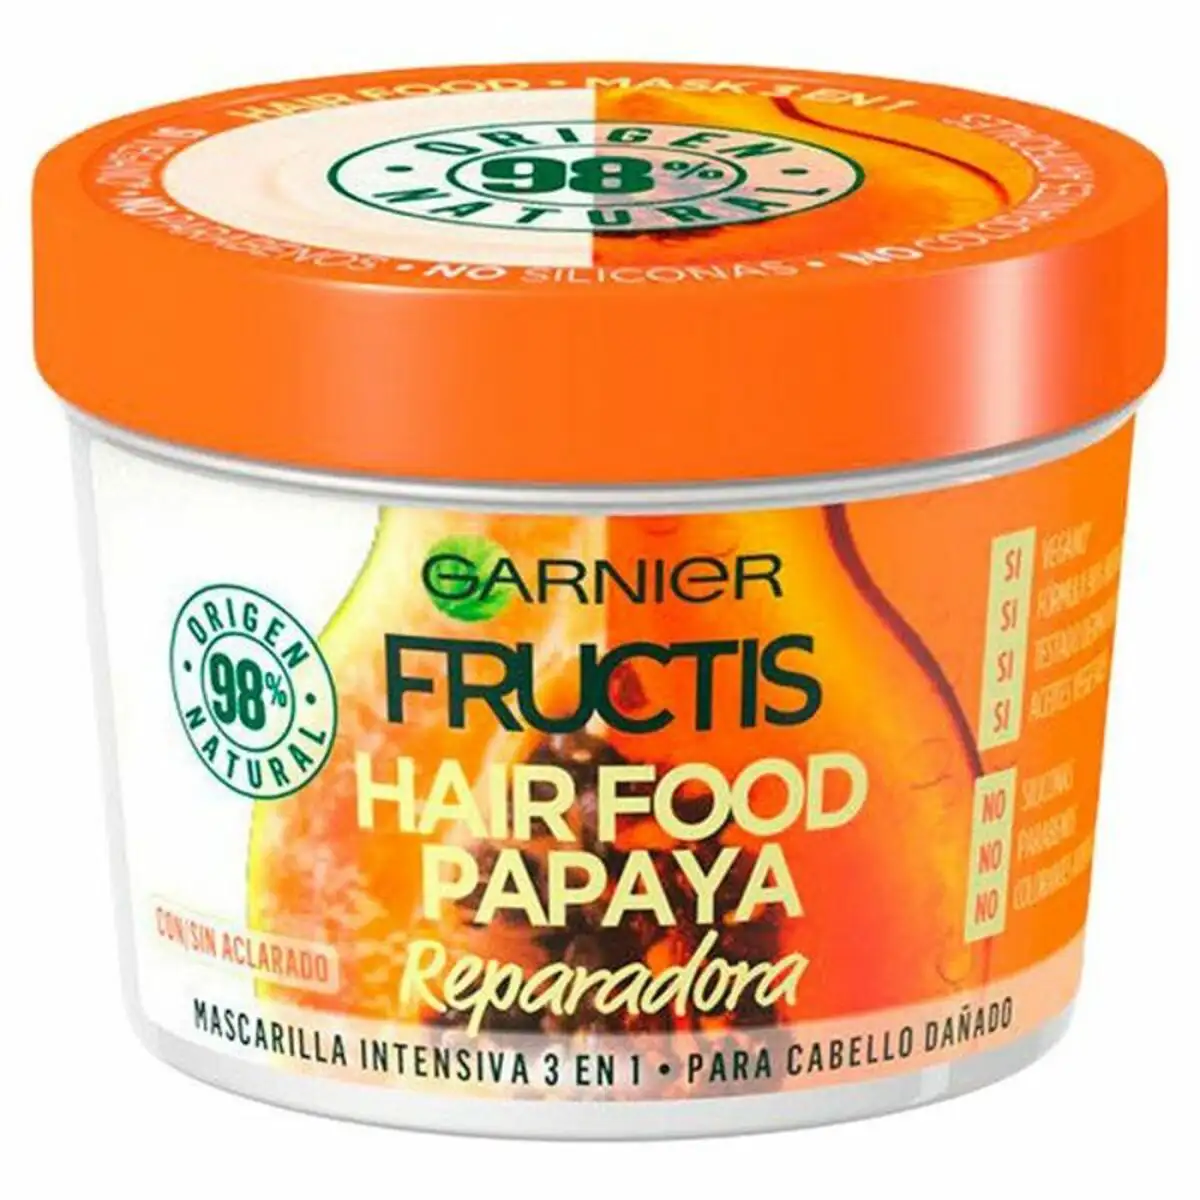 Masque reparateur pour cheveux hair food papaya garnier fructis hair food 390 ml 390 ml_5441. DIAYTAR SENEGAL - L'Art du Shopping Facilité. Naviguez sur notre plateforme en ligne pour découvrir une expérience d'achat fluide et agréable, avec une gamme de produits adaptés à tous.